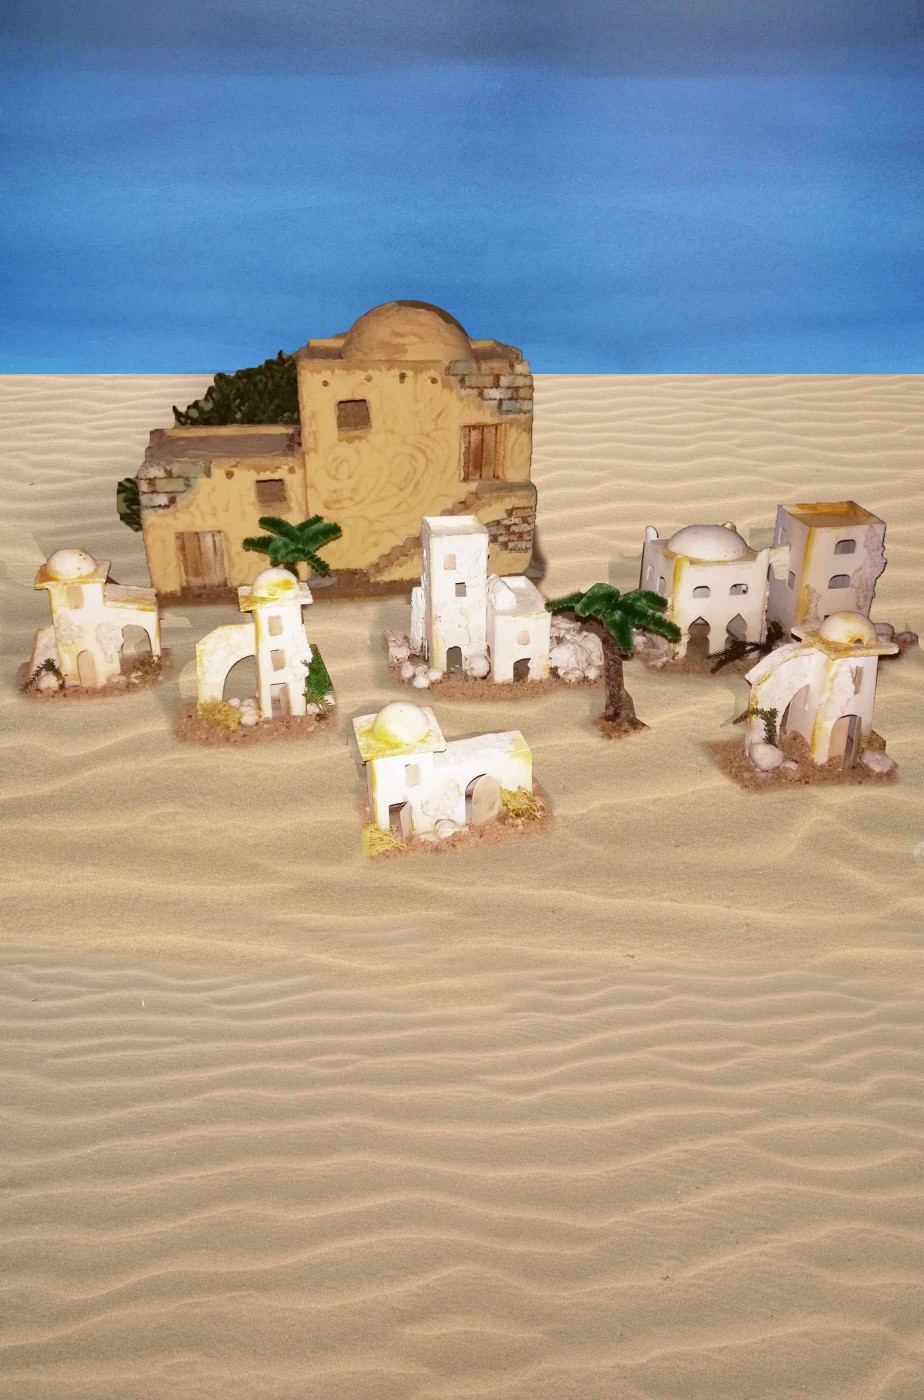 Ambientazione casette del deserto per diorami o presepe